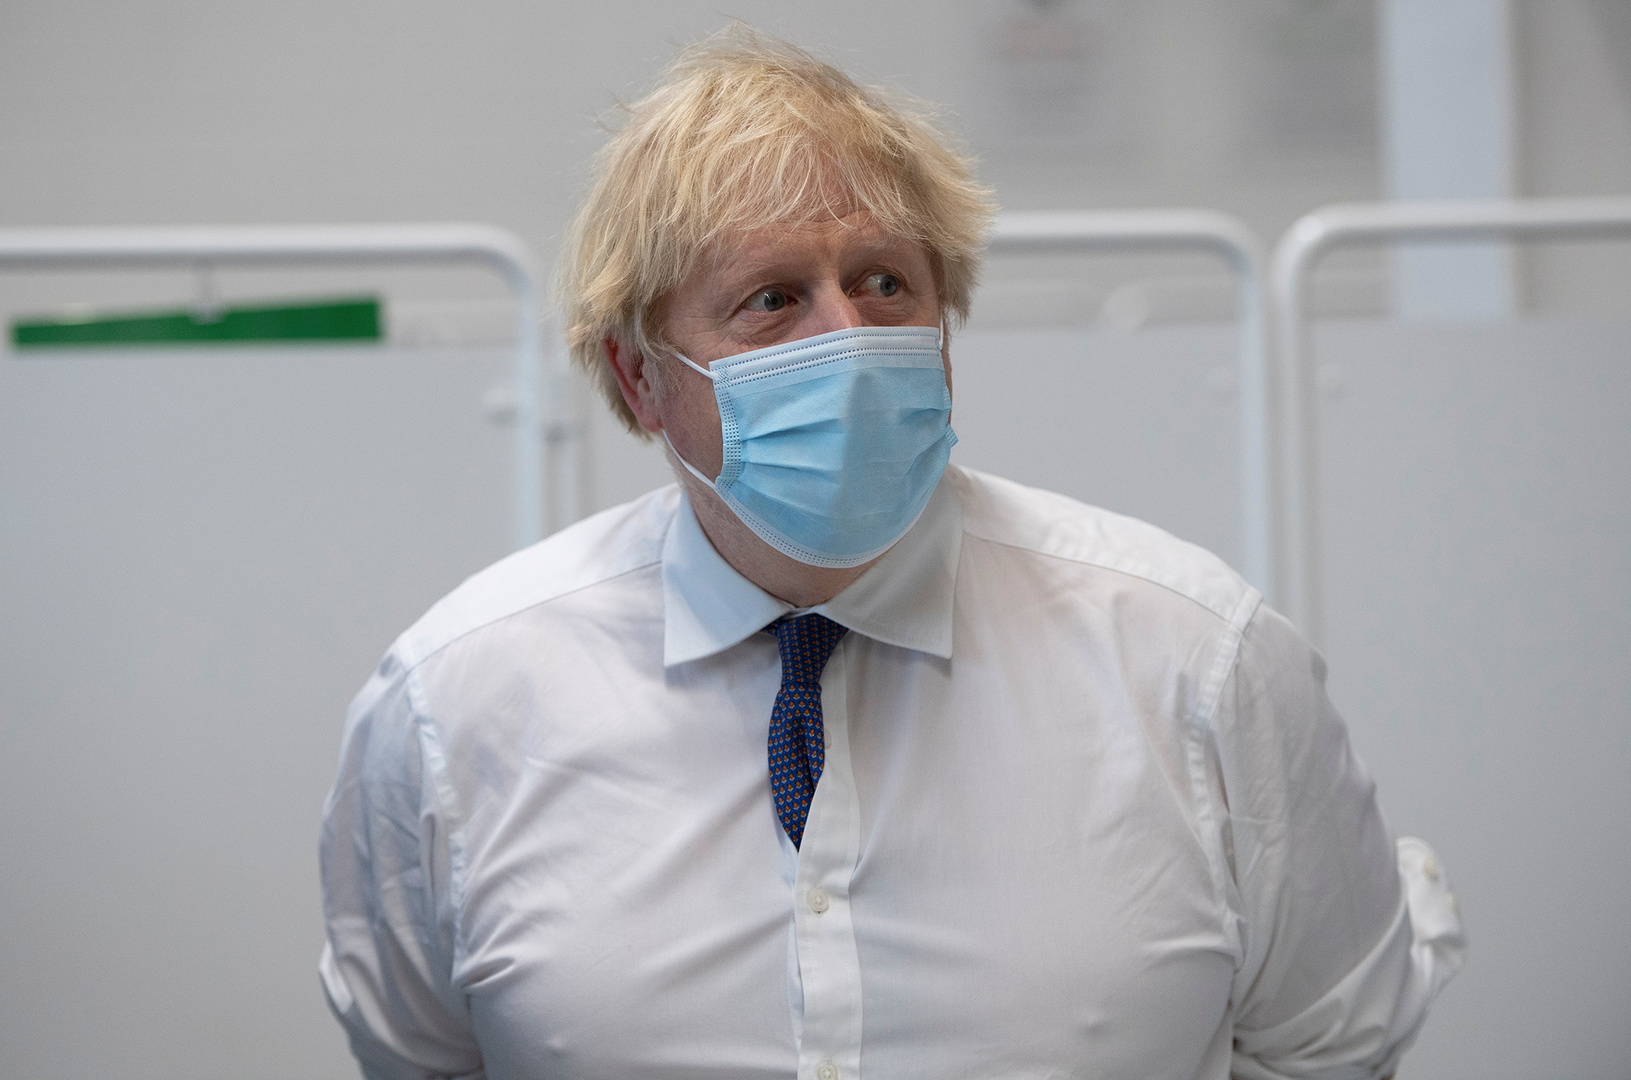 جونسون: بريطانيا تواجه لحظة عصيبة بسبب نقص الأكسجين في بعض المناطق